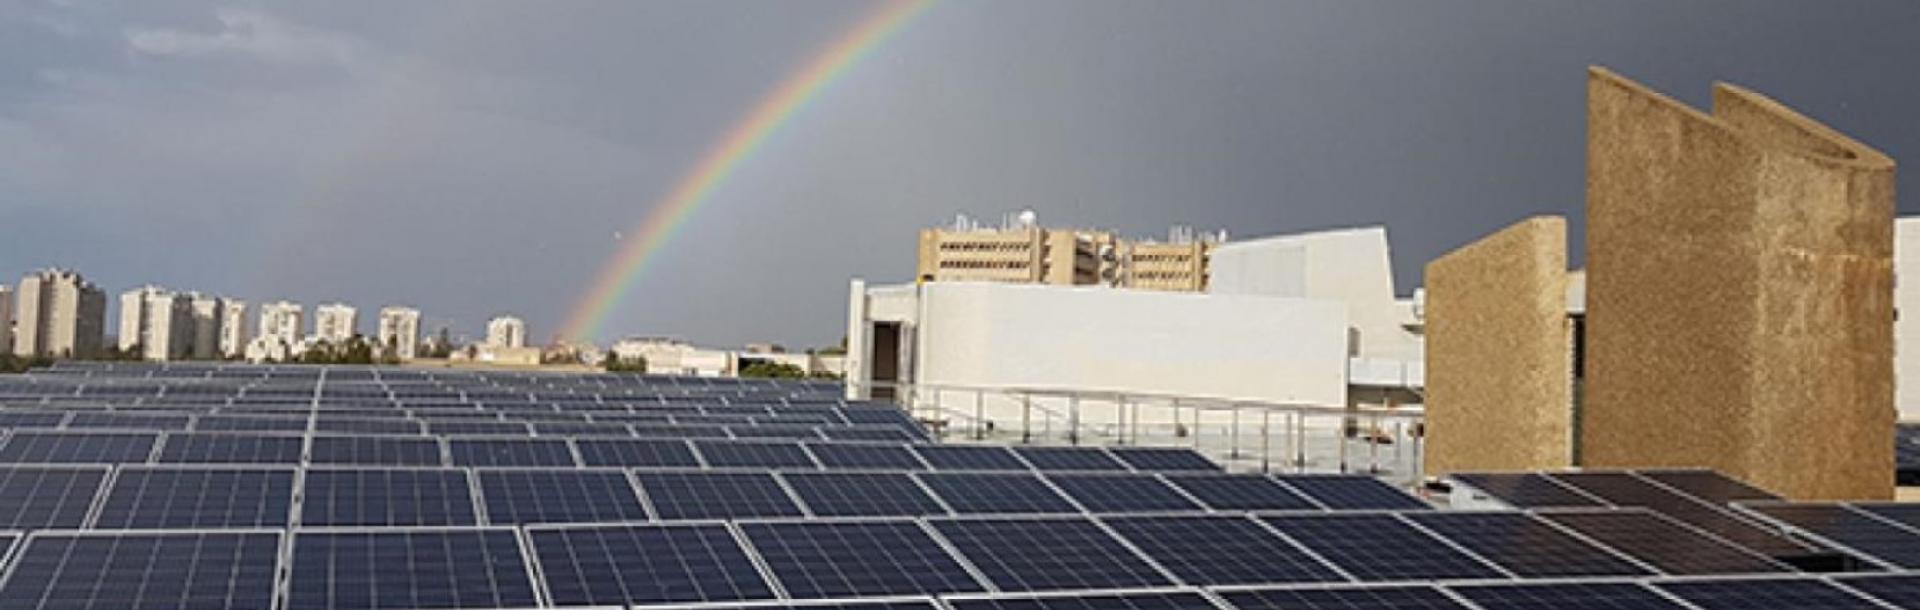 אוניברסיטת תל אביב תעבור ל-100% צריכת חשמל בקמפוס ממקורות אנרגיה ירוקים